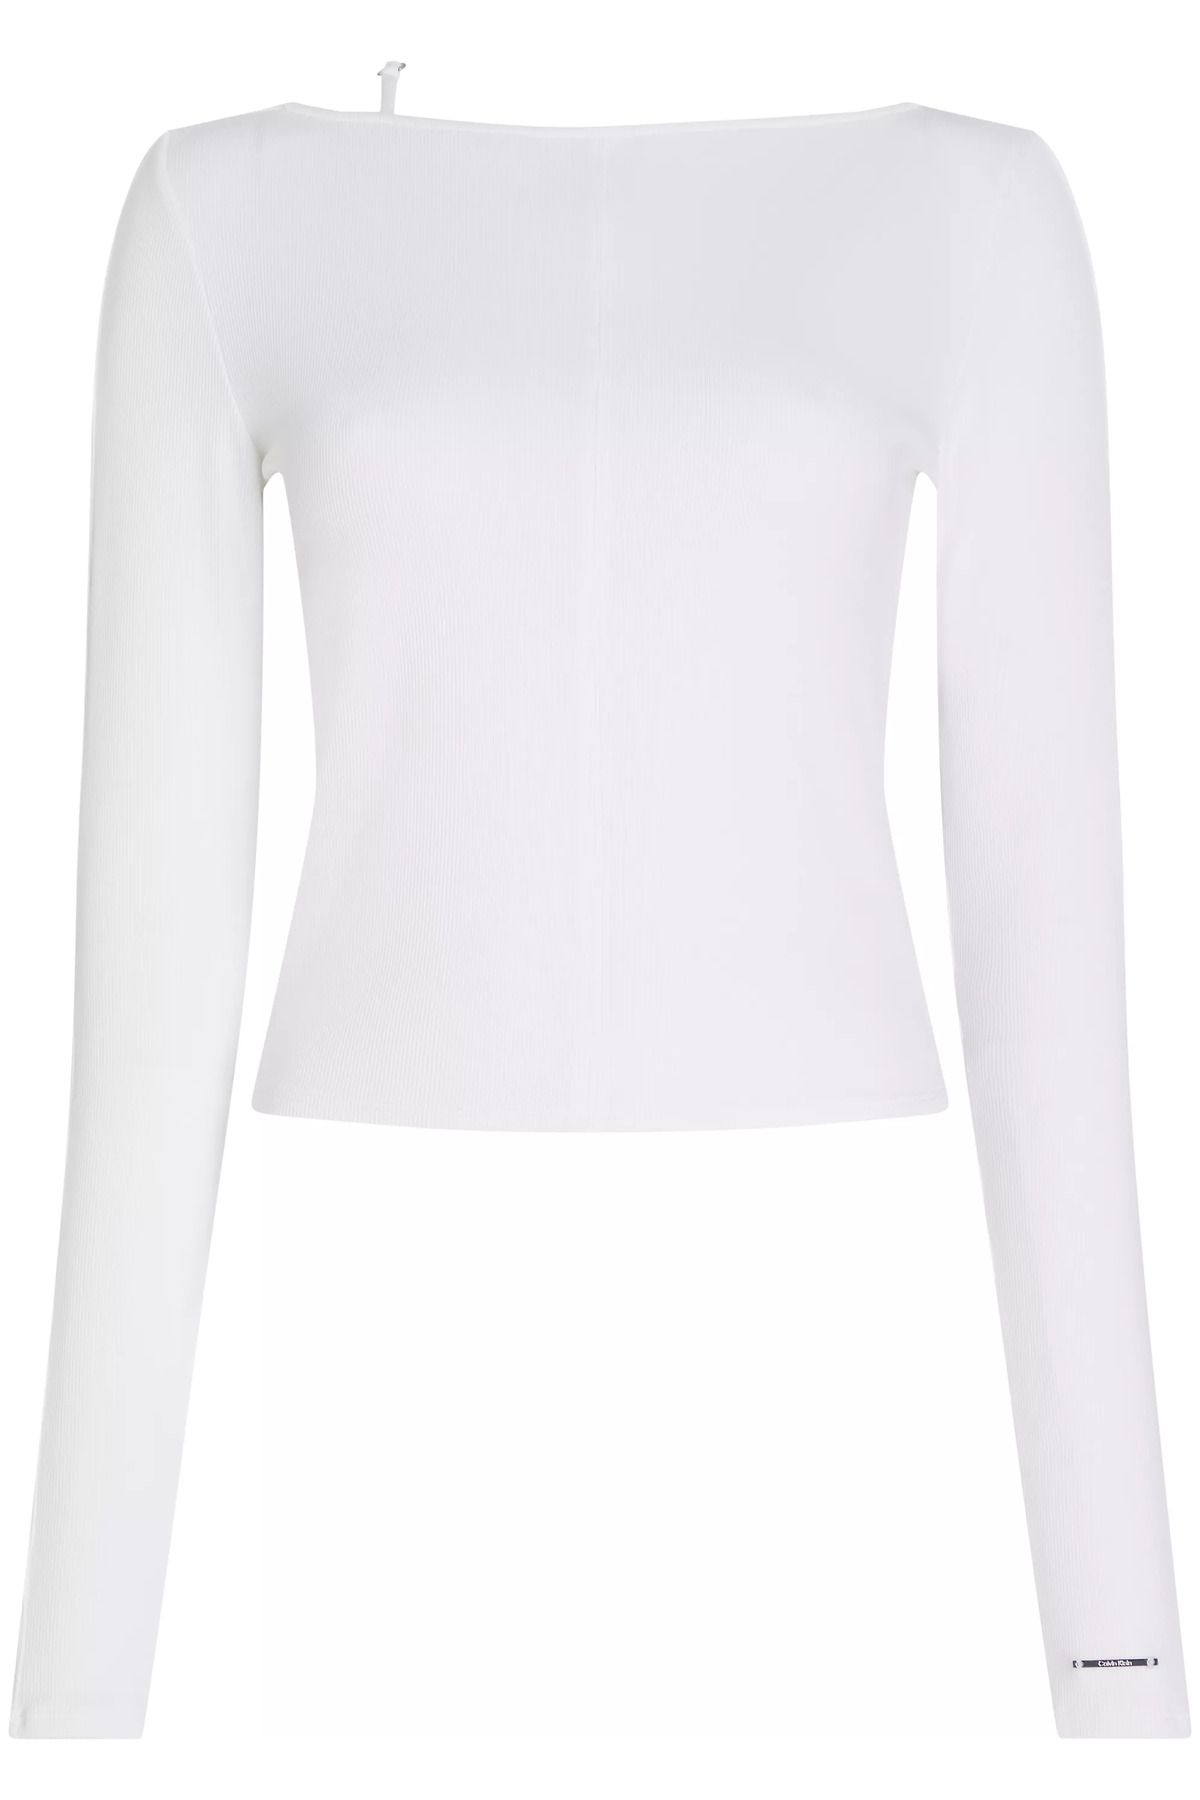 Calvin Klein Kadın Pamuklu Kısa Kollu Yuvarlak Yaka Beyaz Bluz K20K206861-YAF